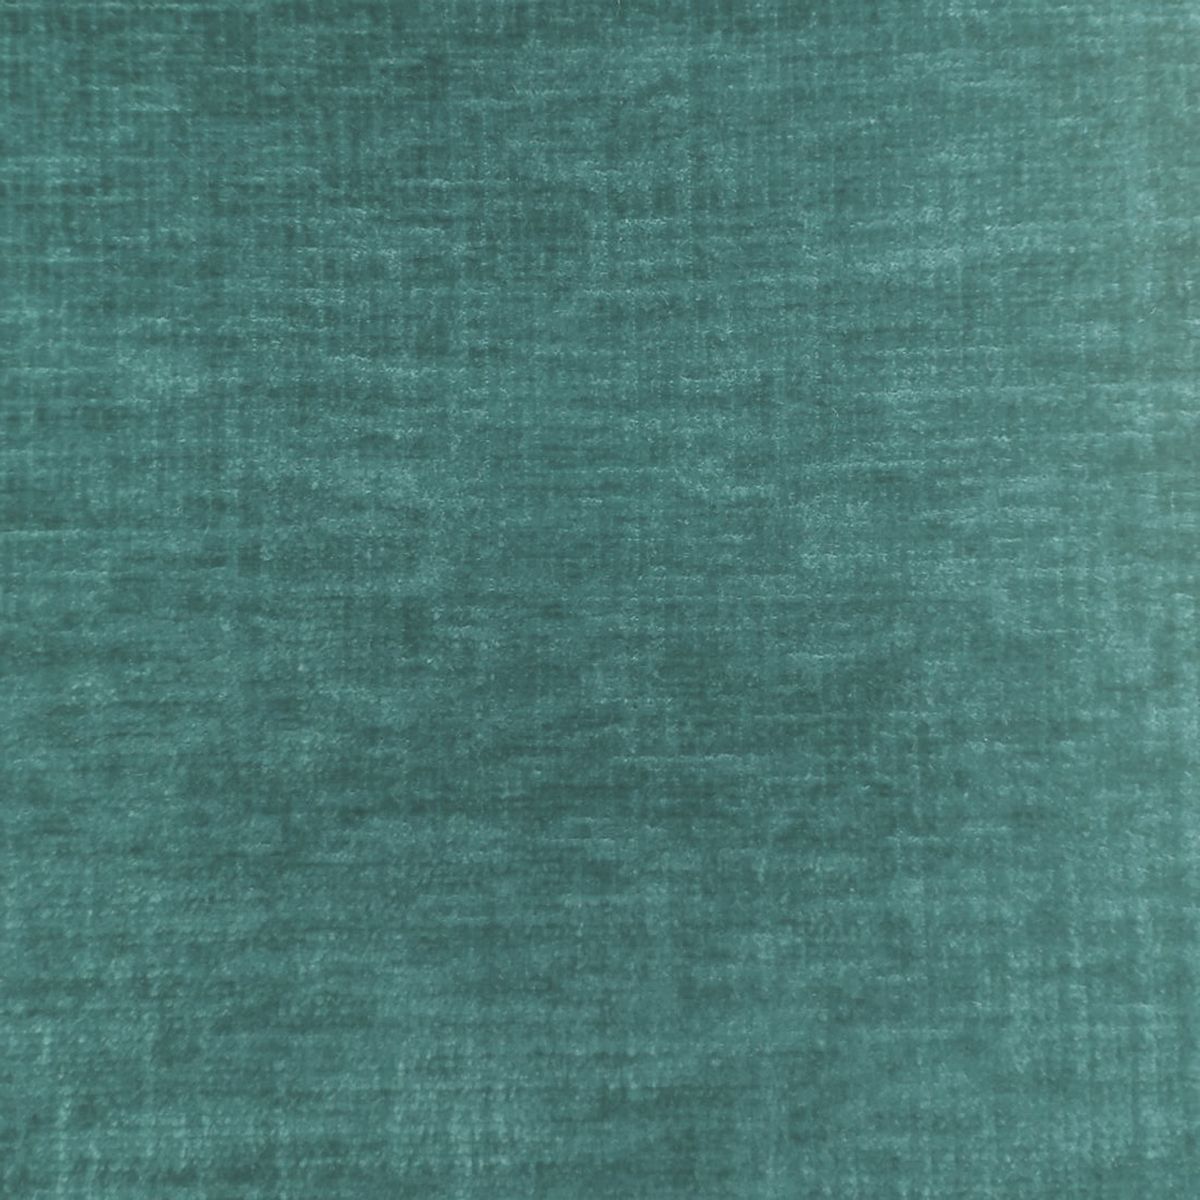 Isernia Aqua Velvet Fabric by Voyage Maison